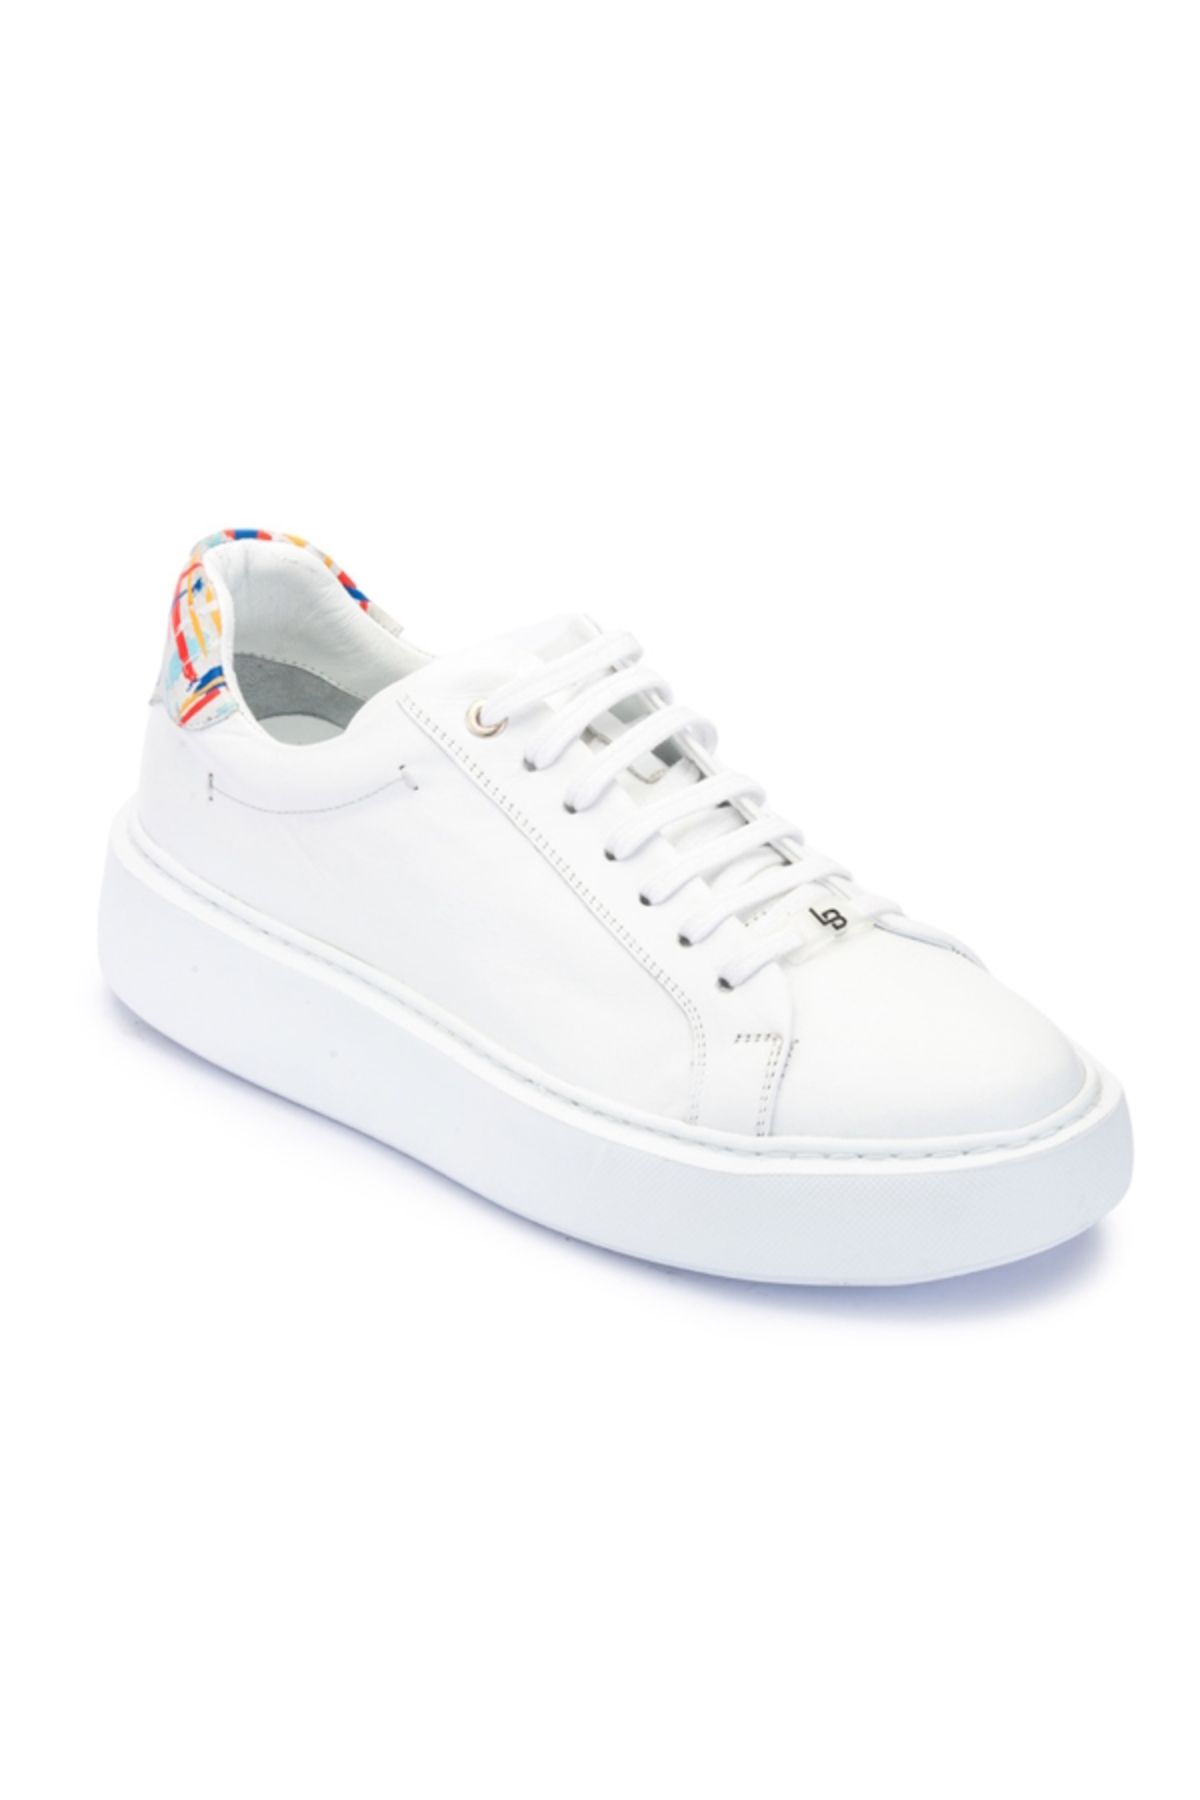 LUCIANO BELLINI E-3732 Beyaz Cilt Deri Erkek Sneaker Ayakkabı